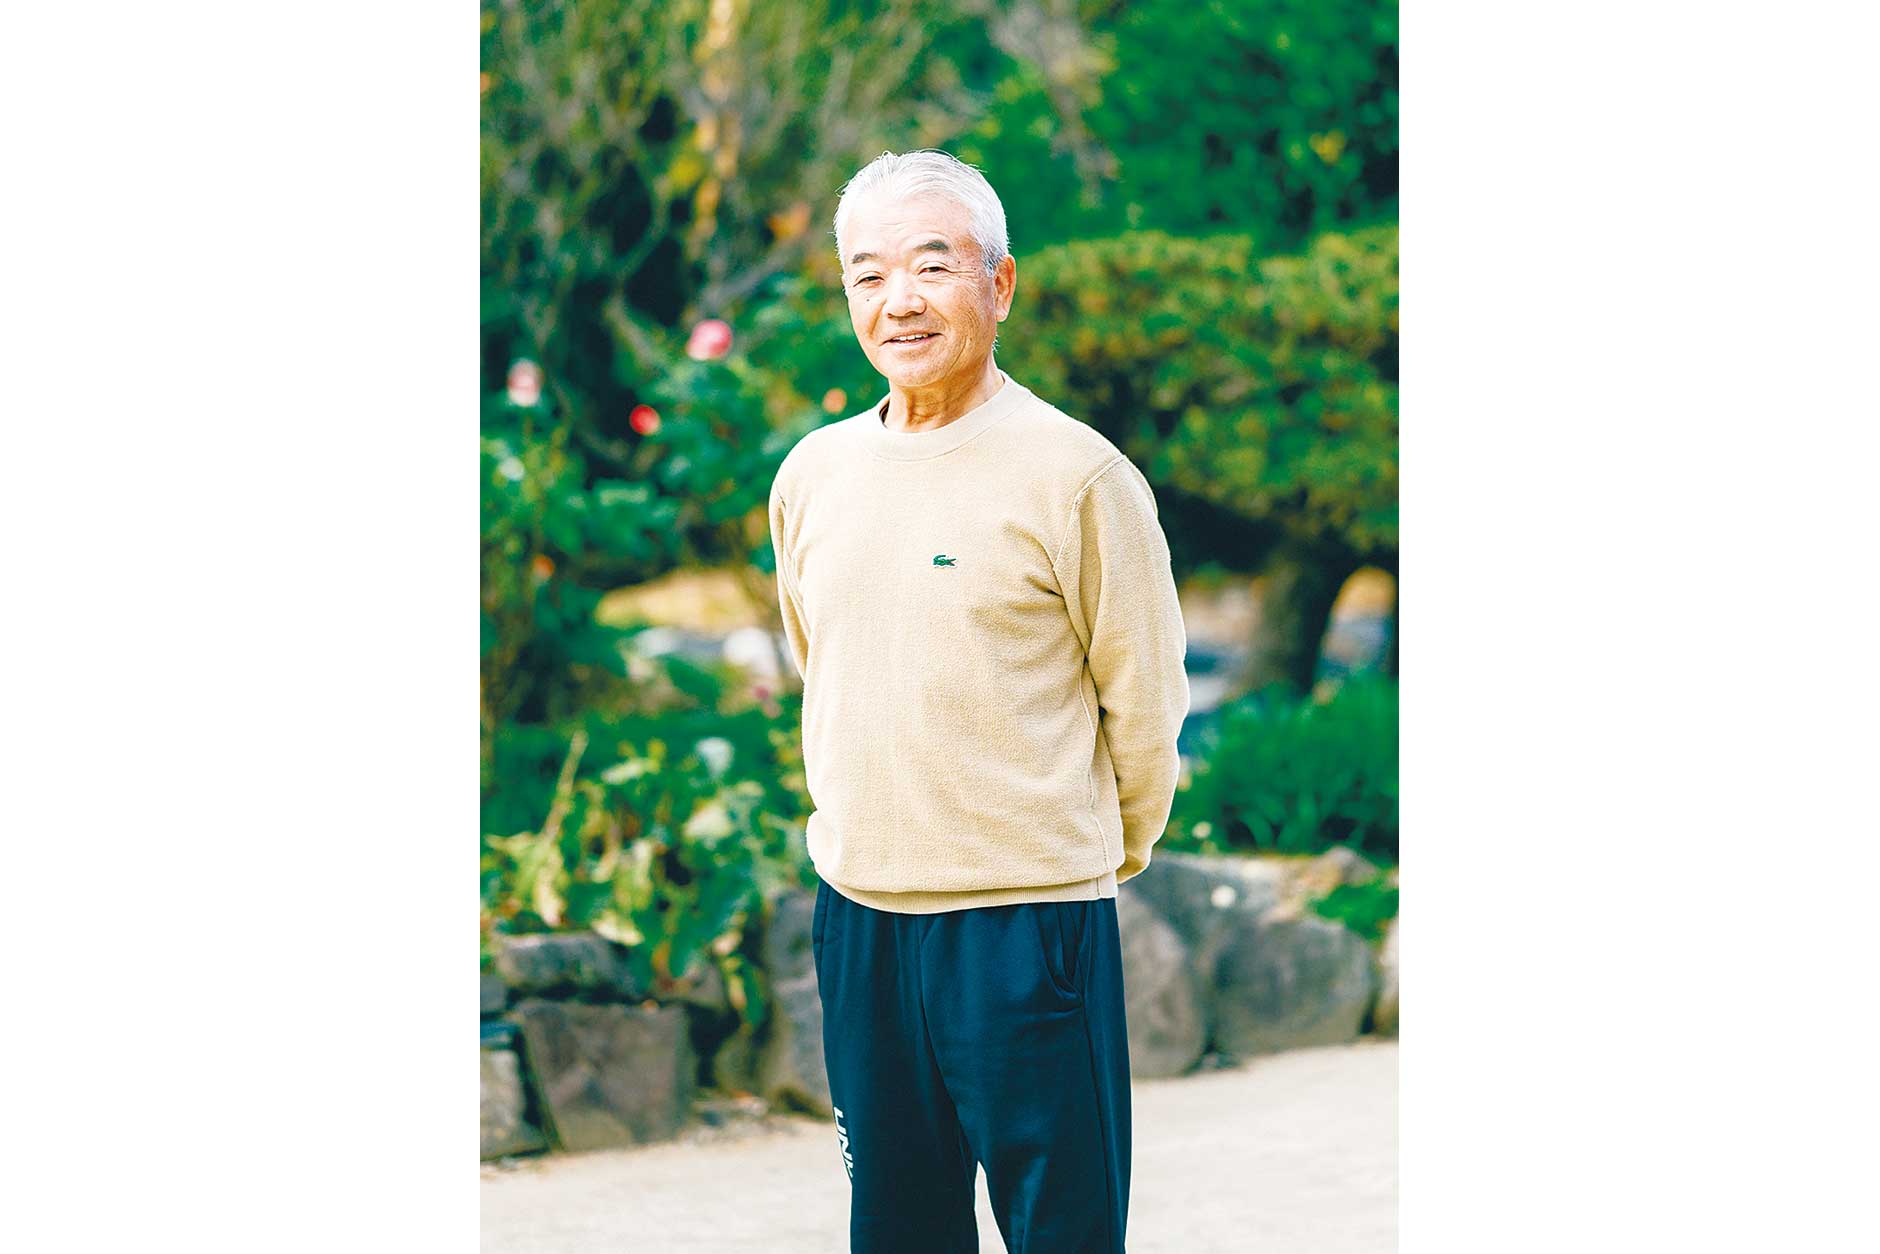 中川 敏行さん 1953年、益城町生まれ。熊本商業高校卒業後、地元の住宅設備会社に就職。定年後、家業である農業を営む傍ら、叔母の水前寺もやし栽培を手伝う。2016年、高齢の叔母からもやし栽培を引き継ぐ。南区で妻と2人暮らし。